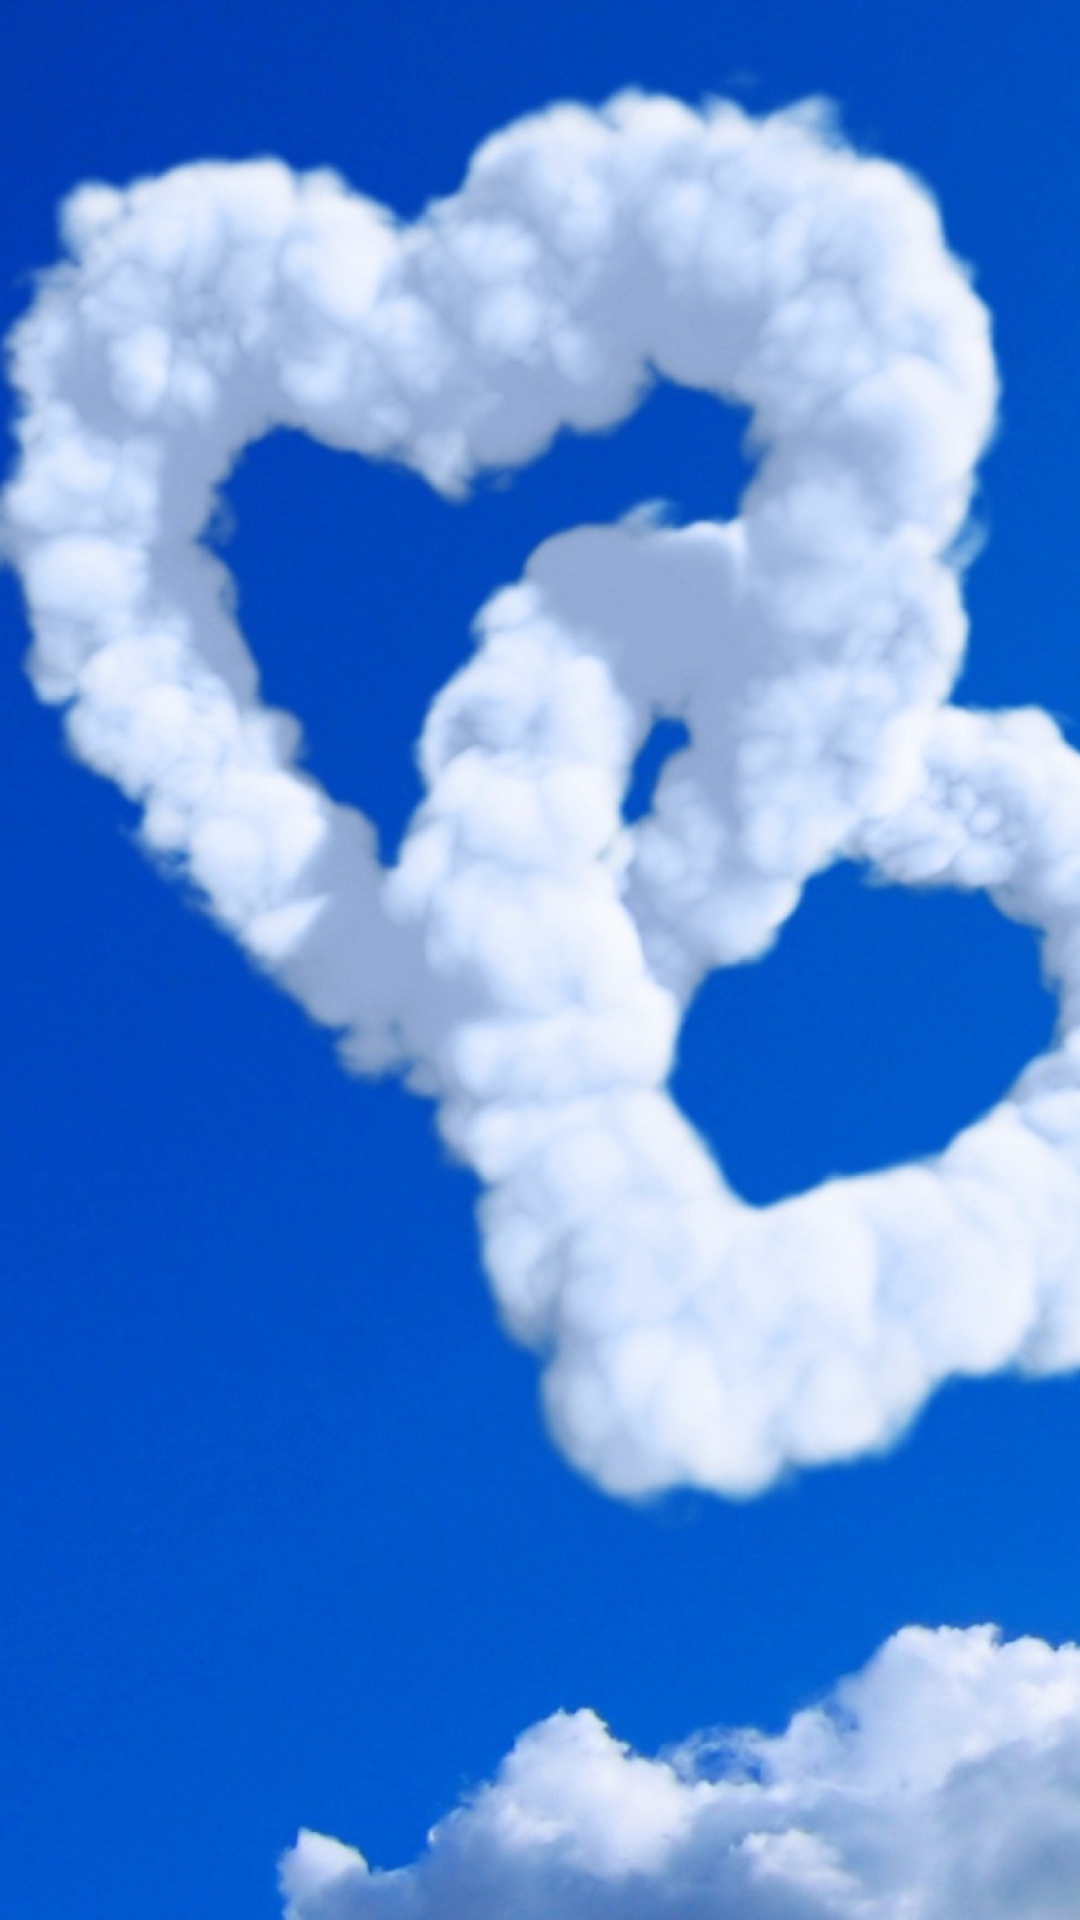 Das Heart Shaped Clouds Wallpaper 1080x1920